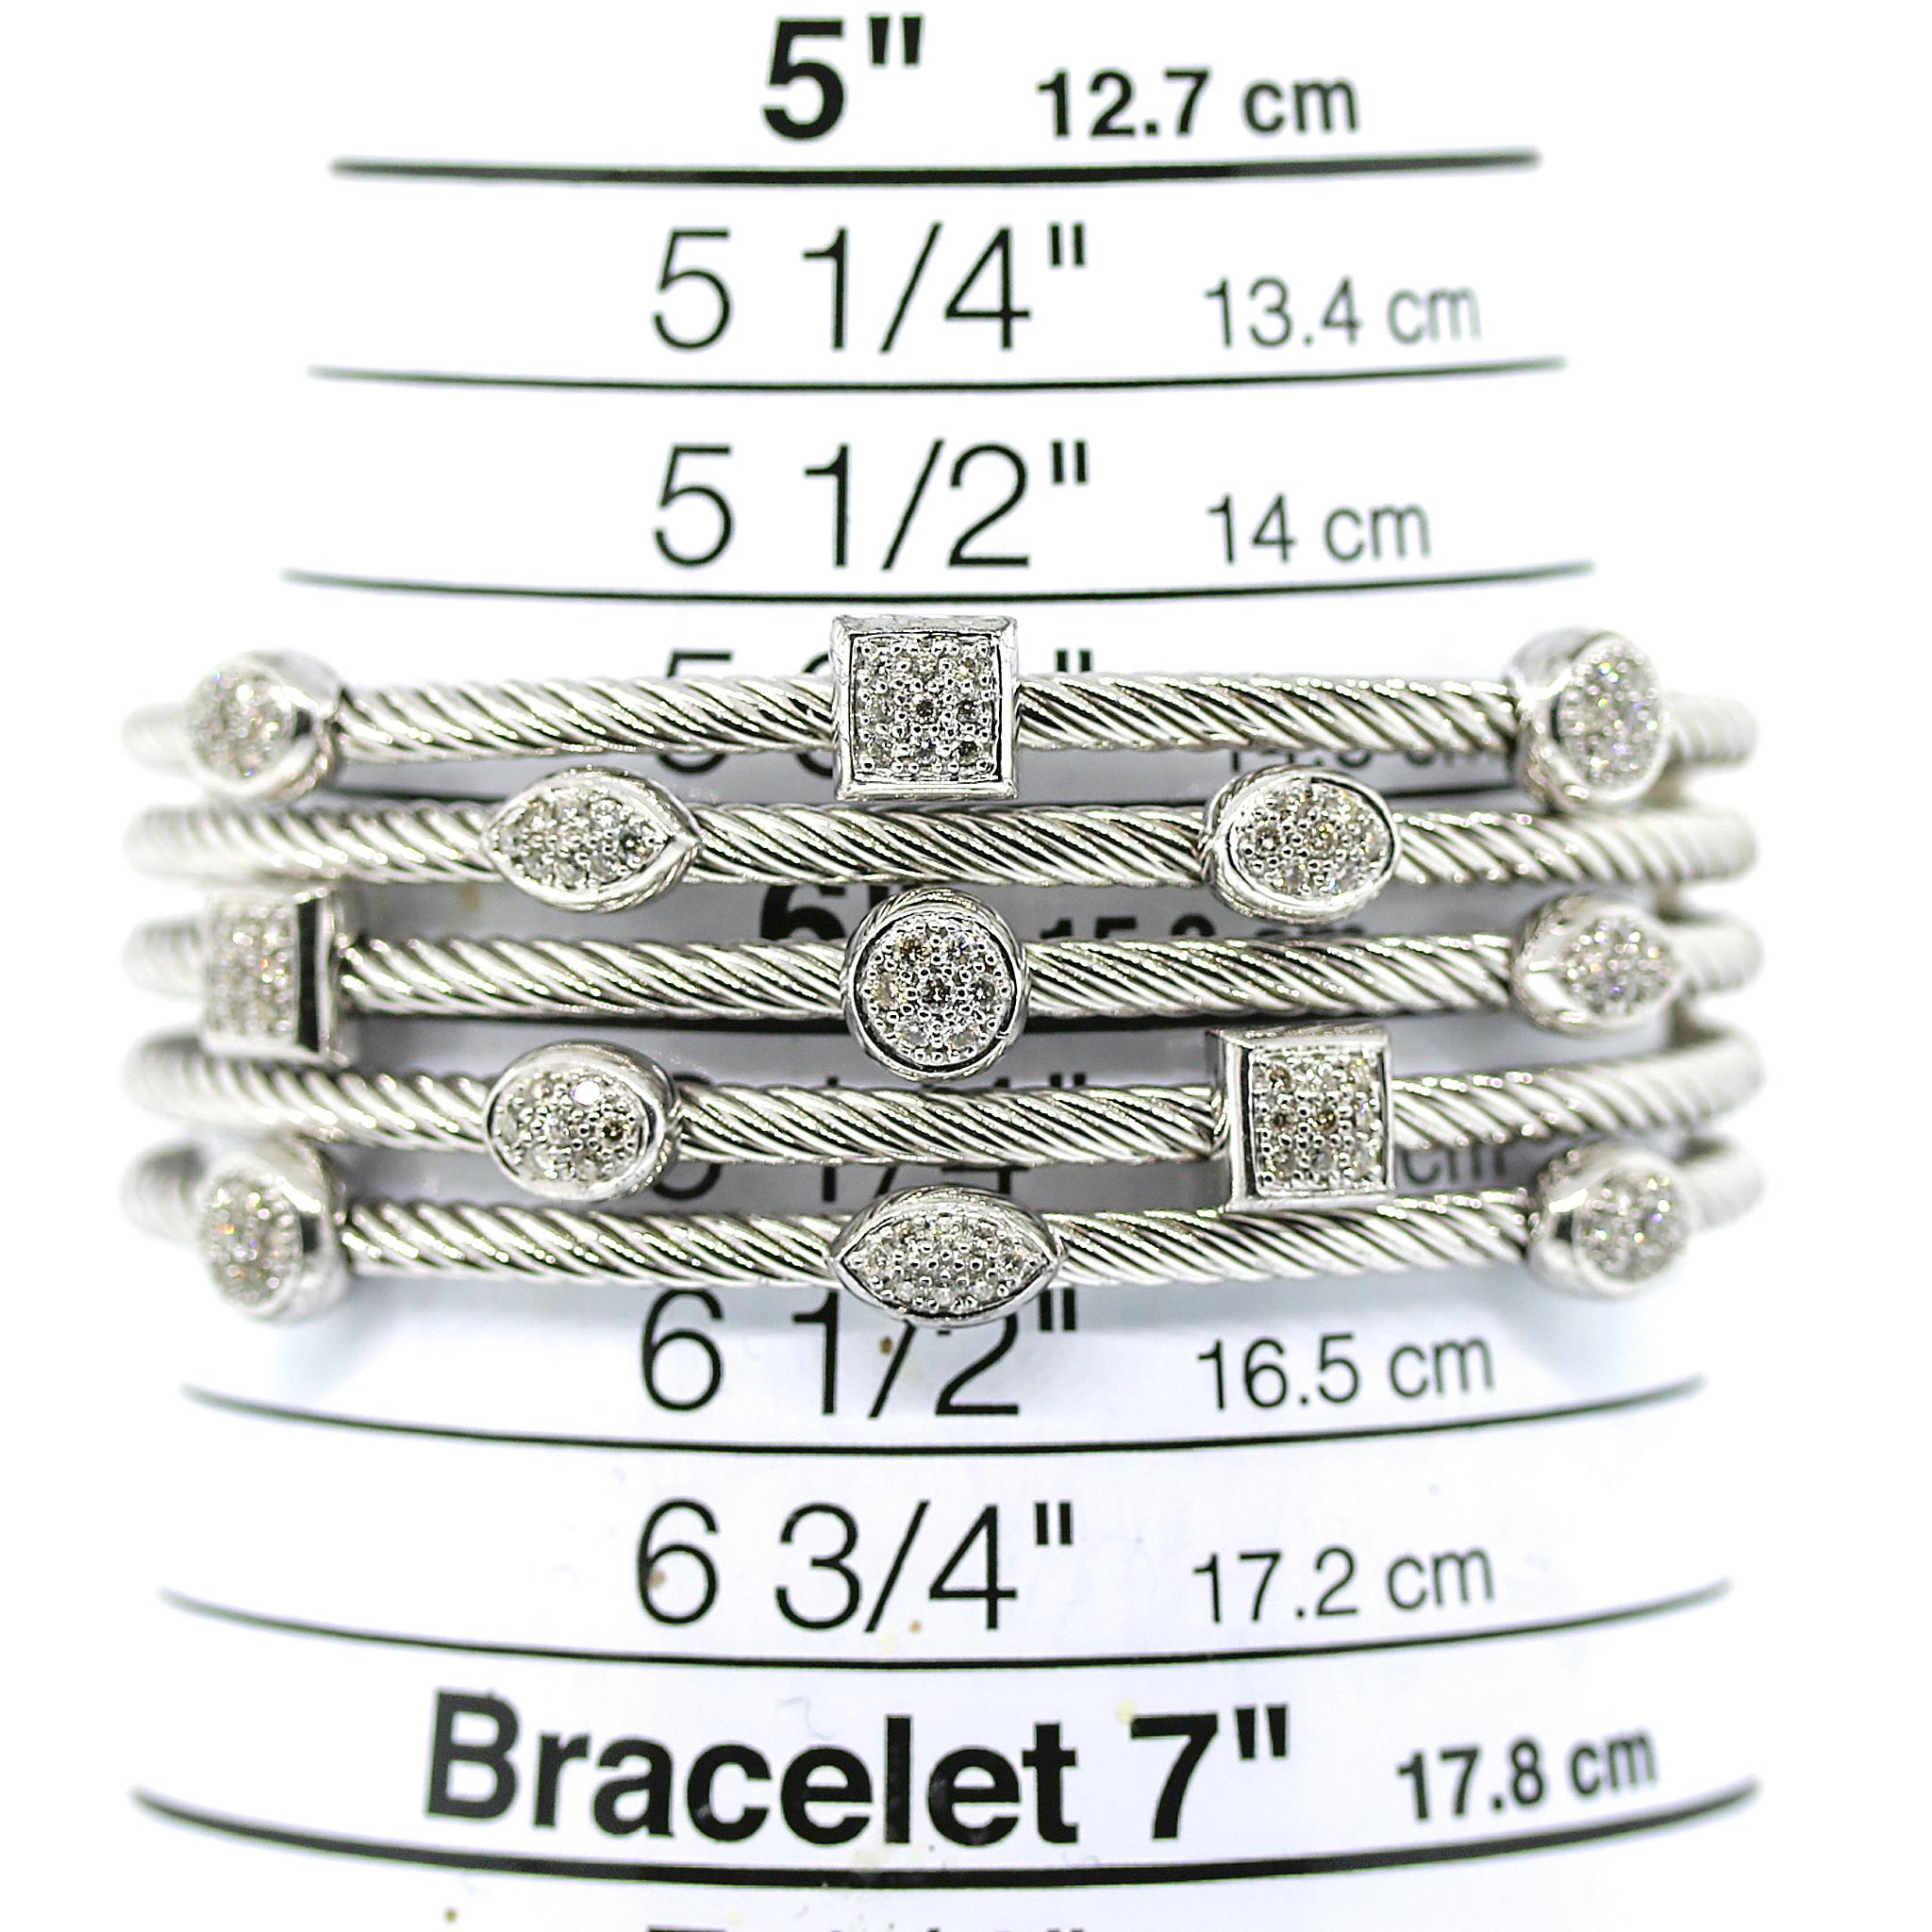 Sterlingsilber
Fünf Kabelbänder aus Sterlingsilber, jedes mit facettierten, gepflasterten Diamanten
Can für Handgelenke bis zu 6,5 Zoll